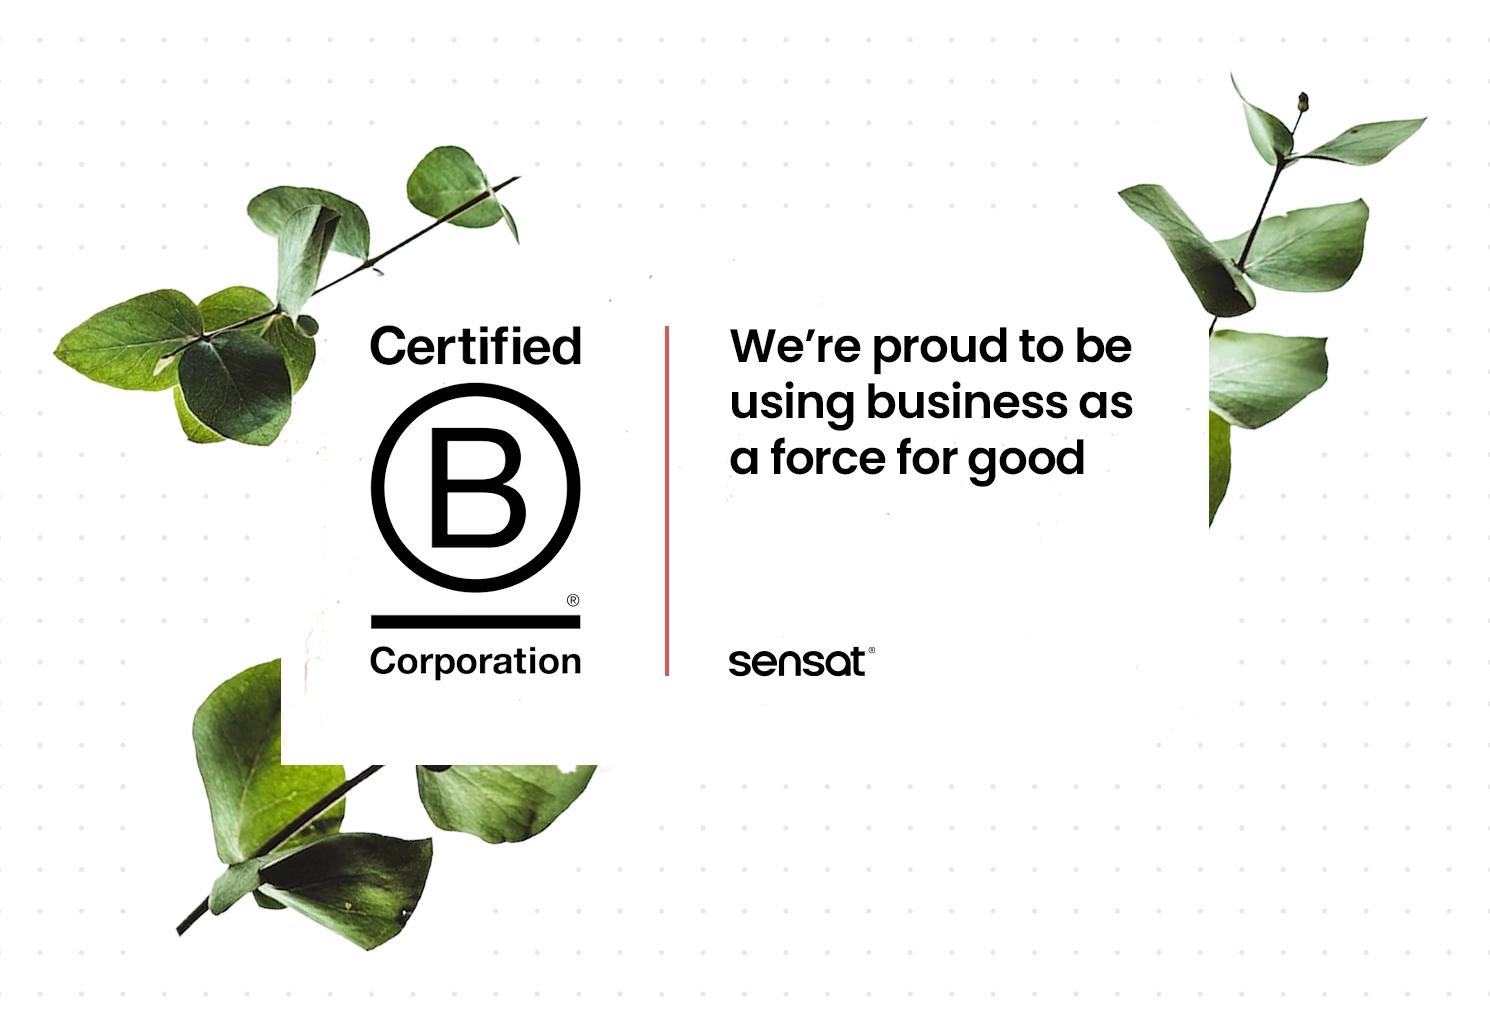 Sensat certifies as a B Corp